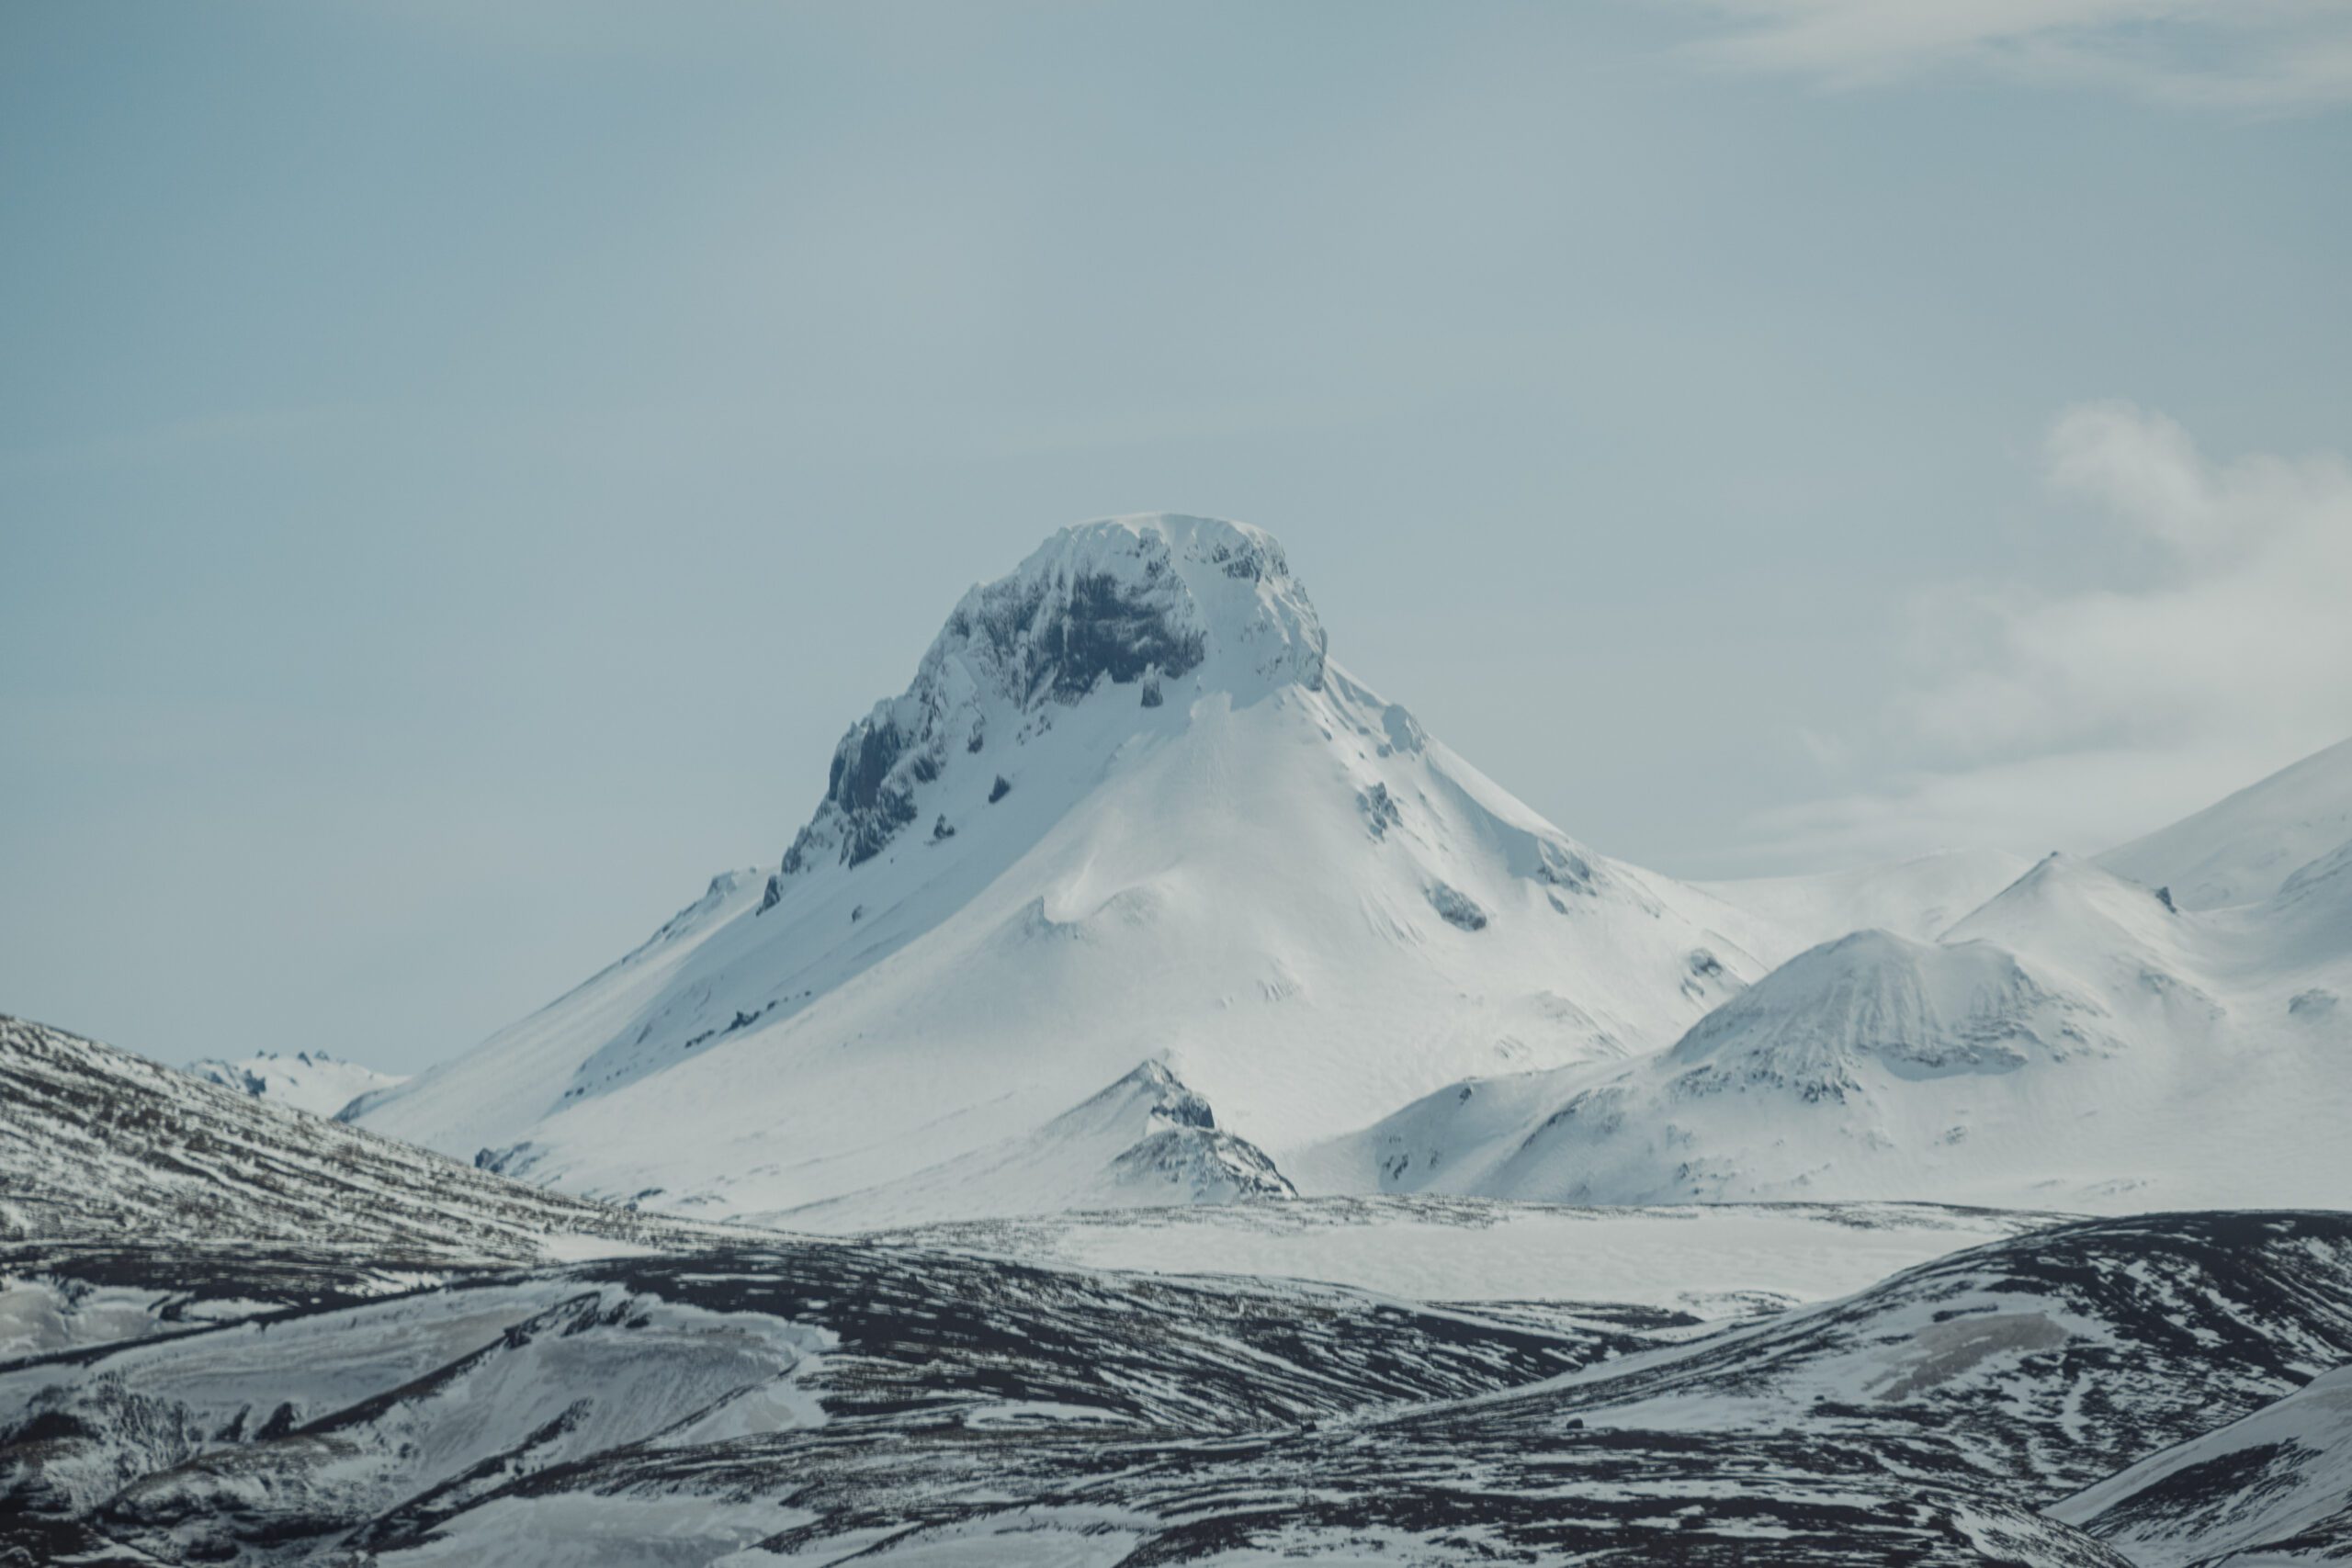 Loðmundur mountain mission